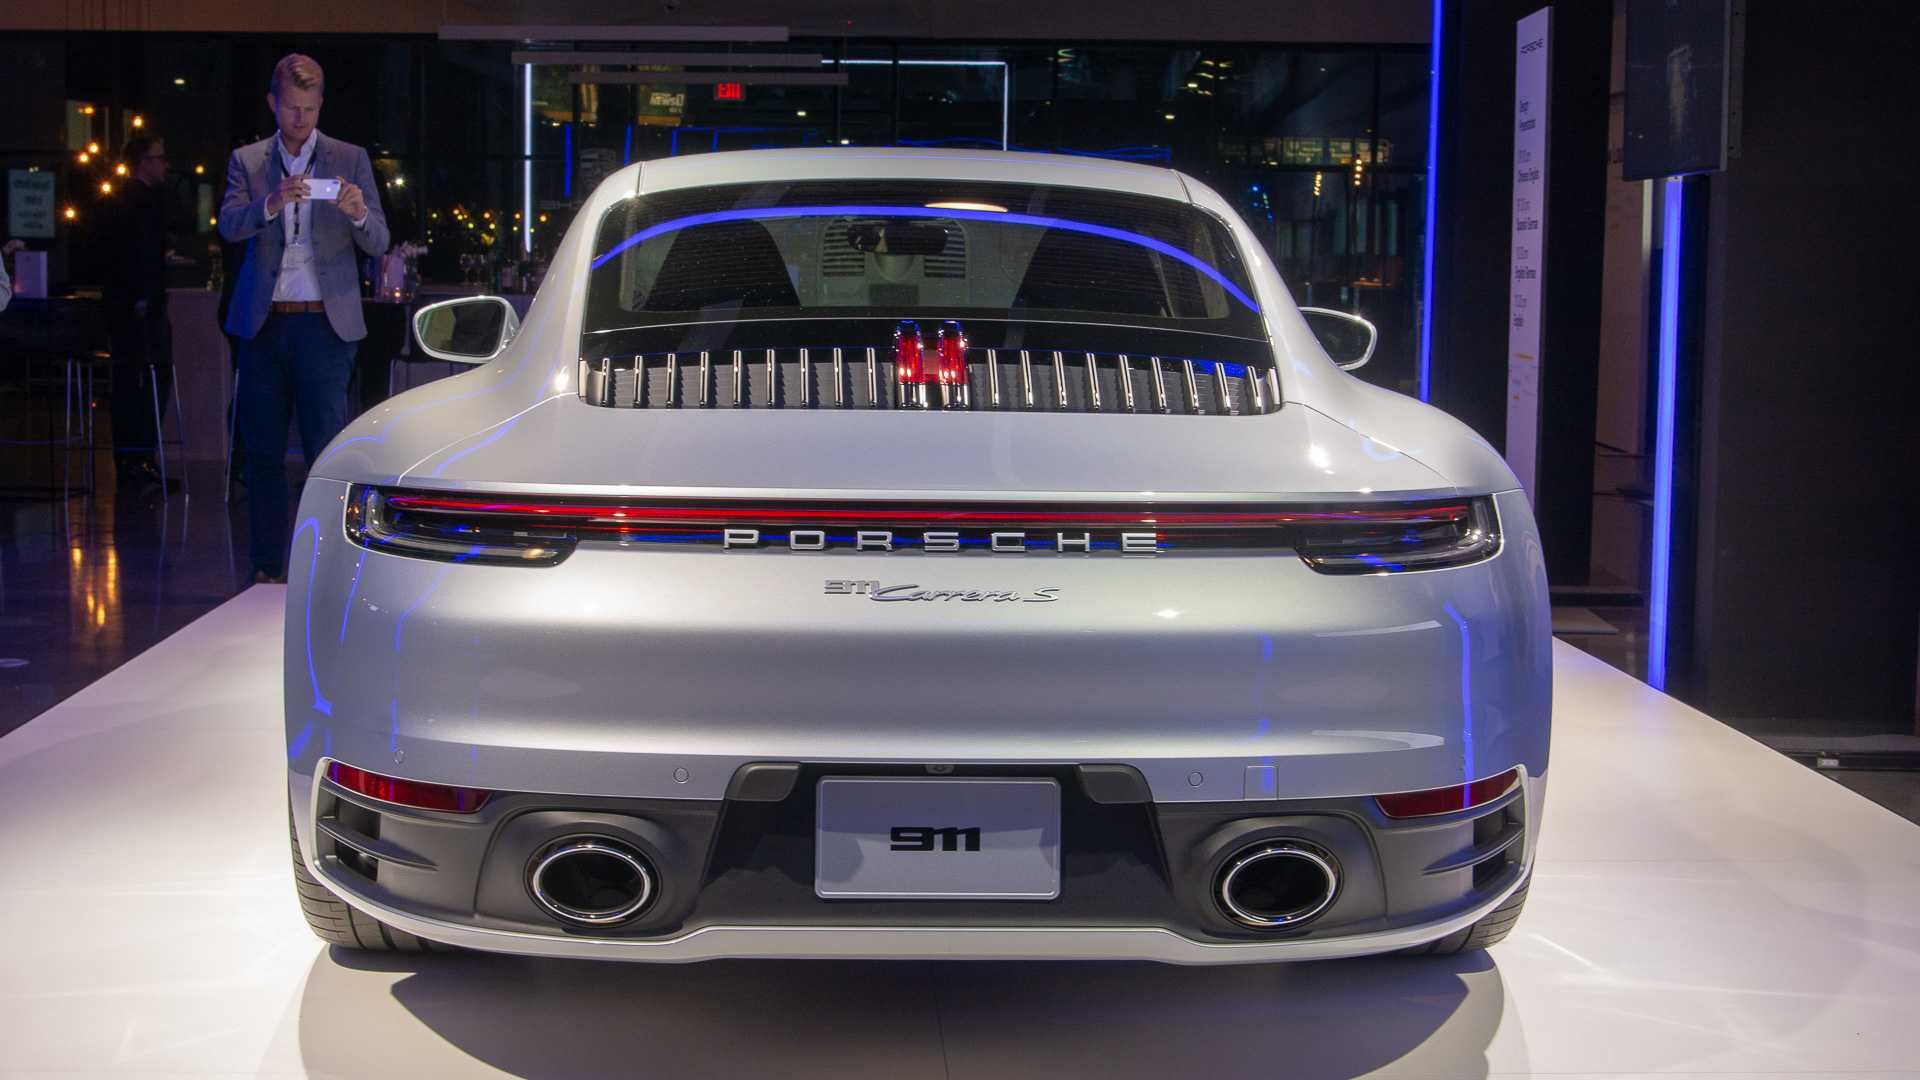 Porsche 911 Hybrid / پورشه 911 هیبریدی